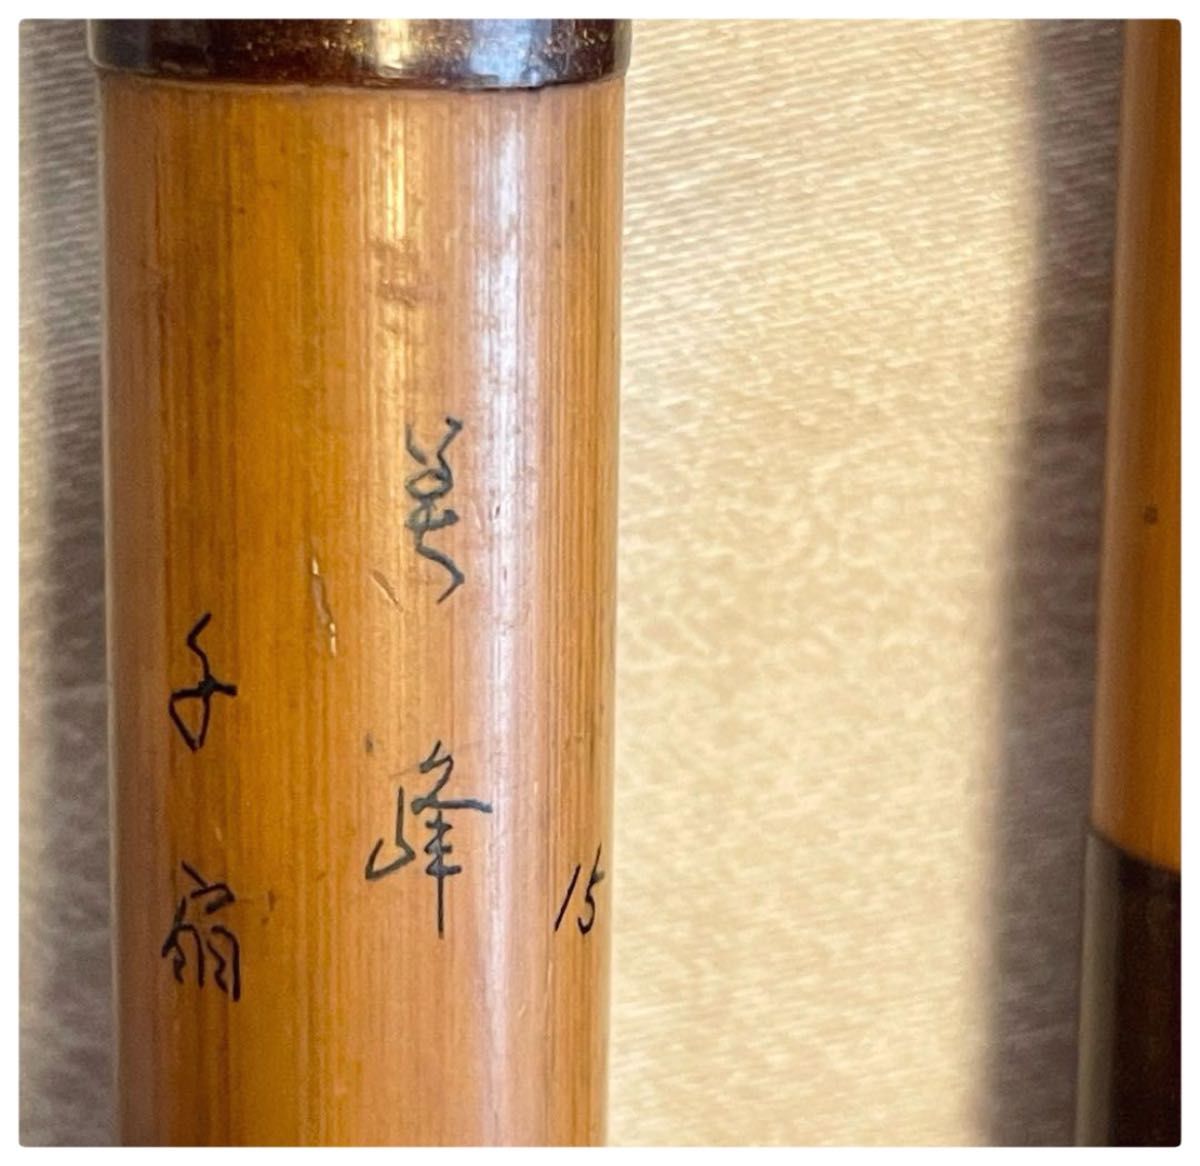 紀州へら竿 竹竿 【美峰 千扇15尺】日本製 5本継ぎ竹竿